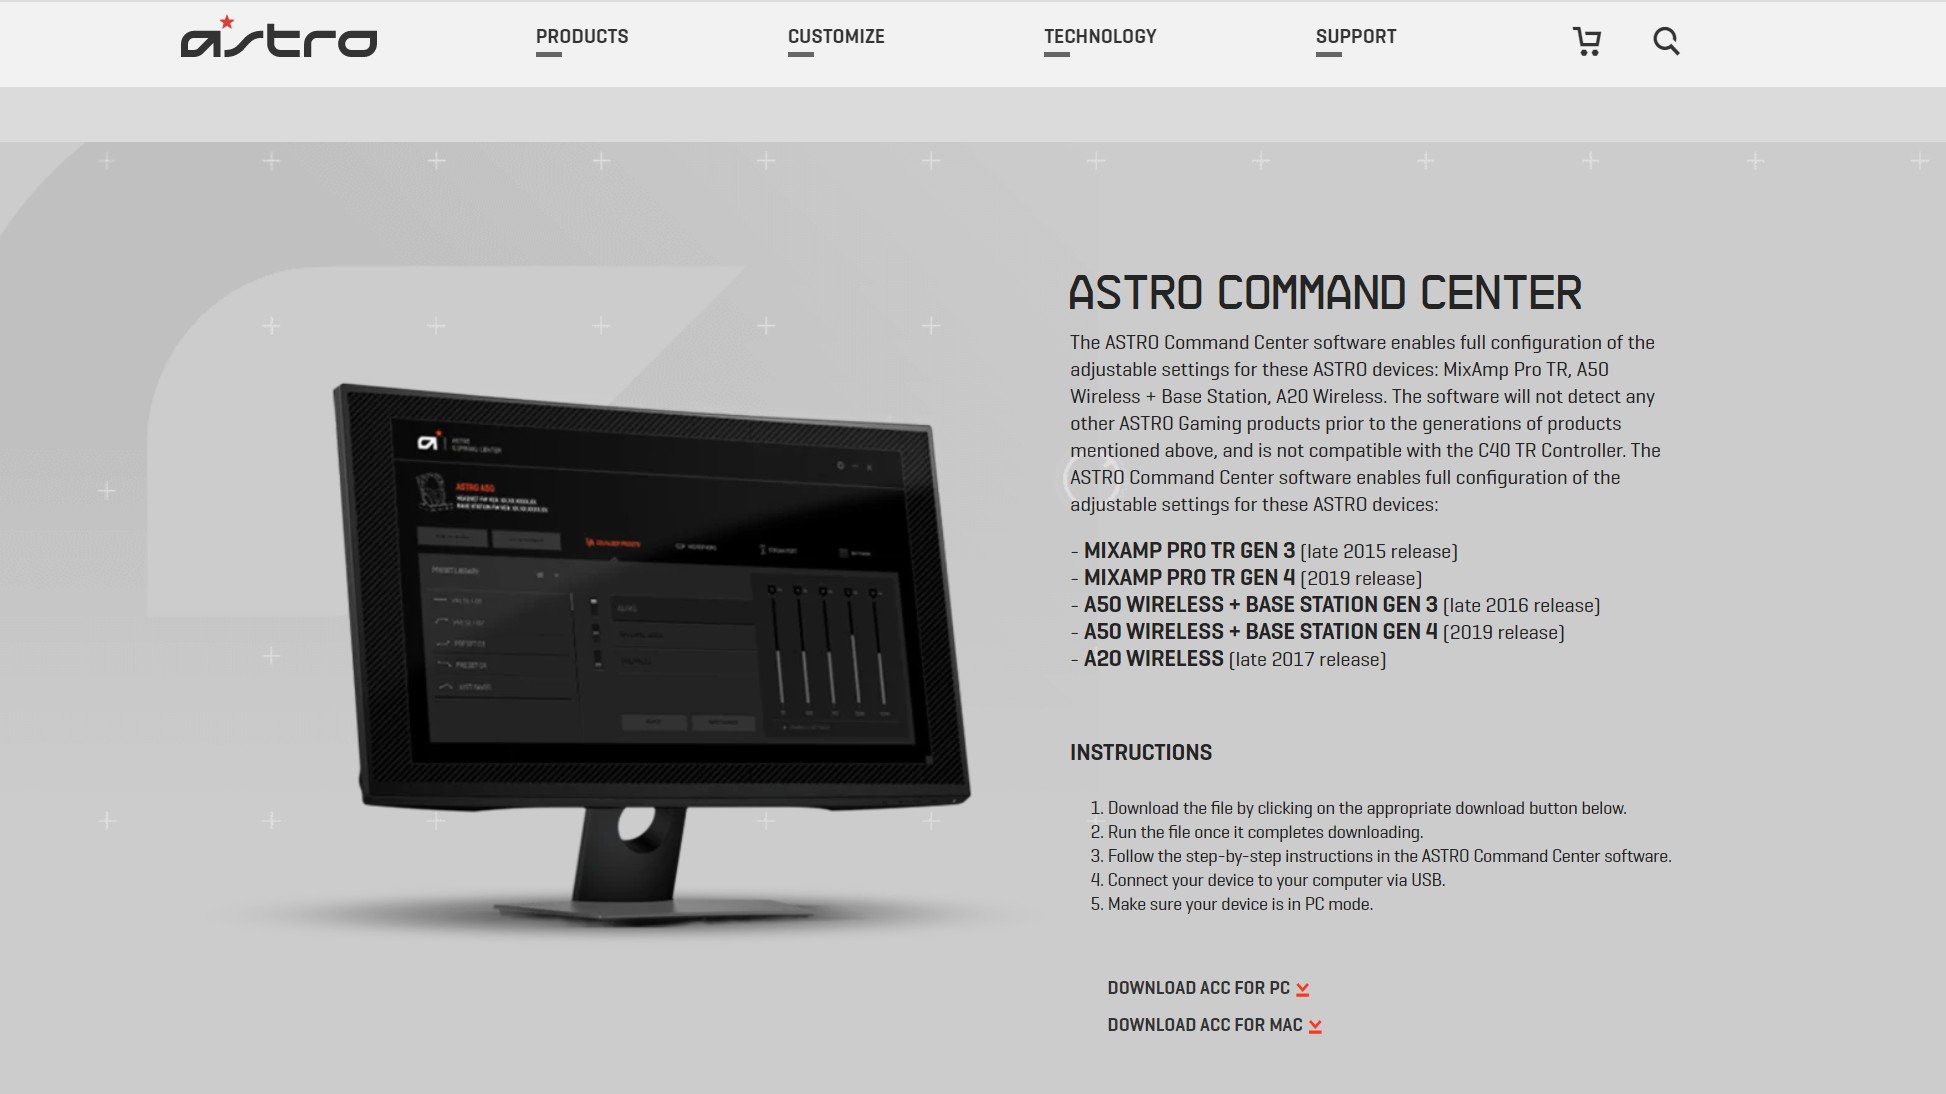 Astro Command Center